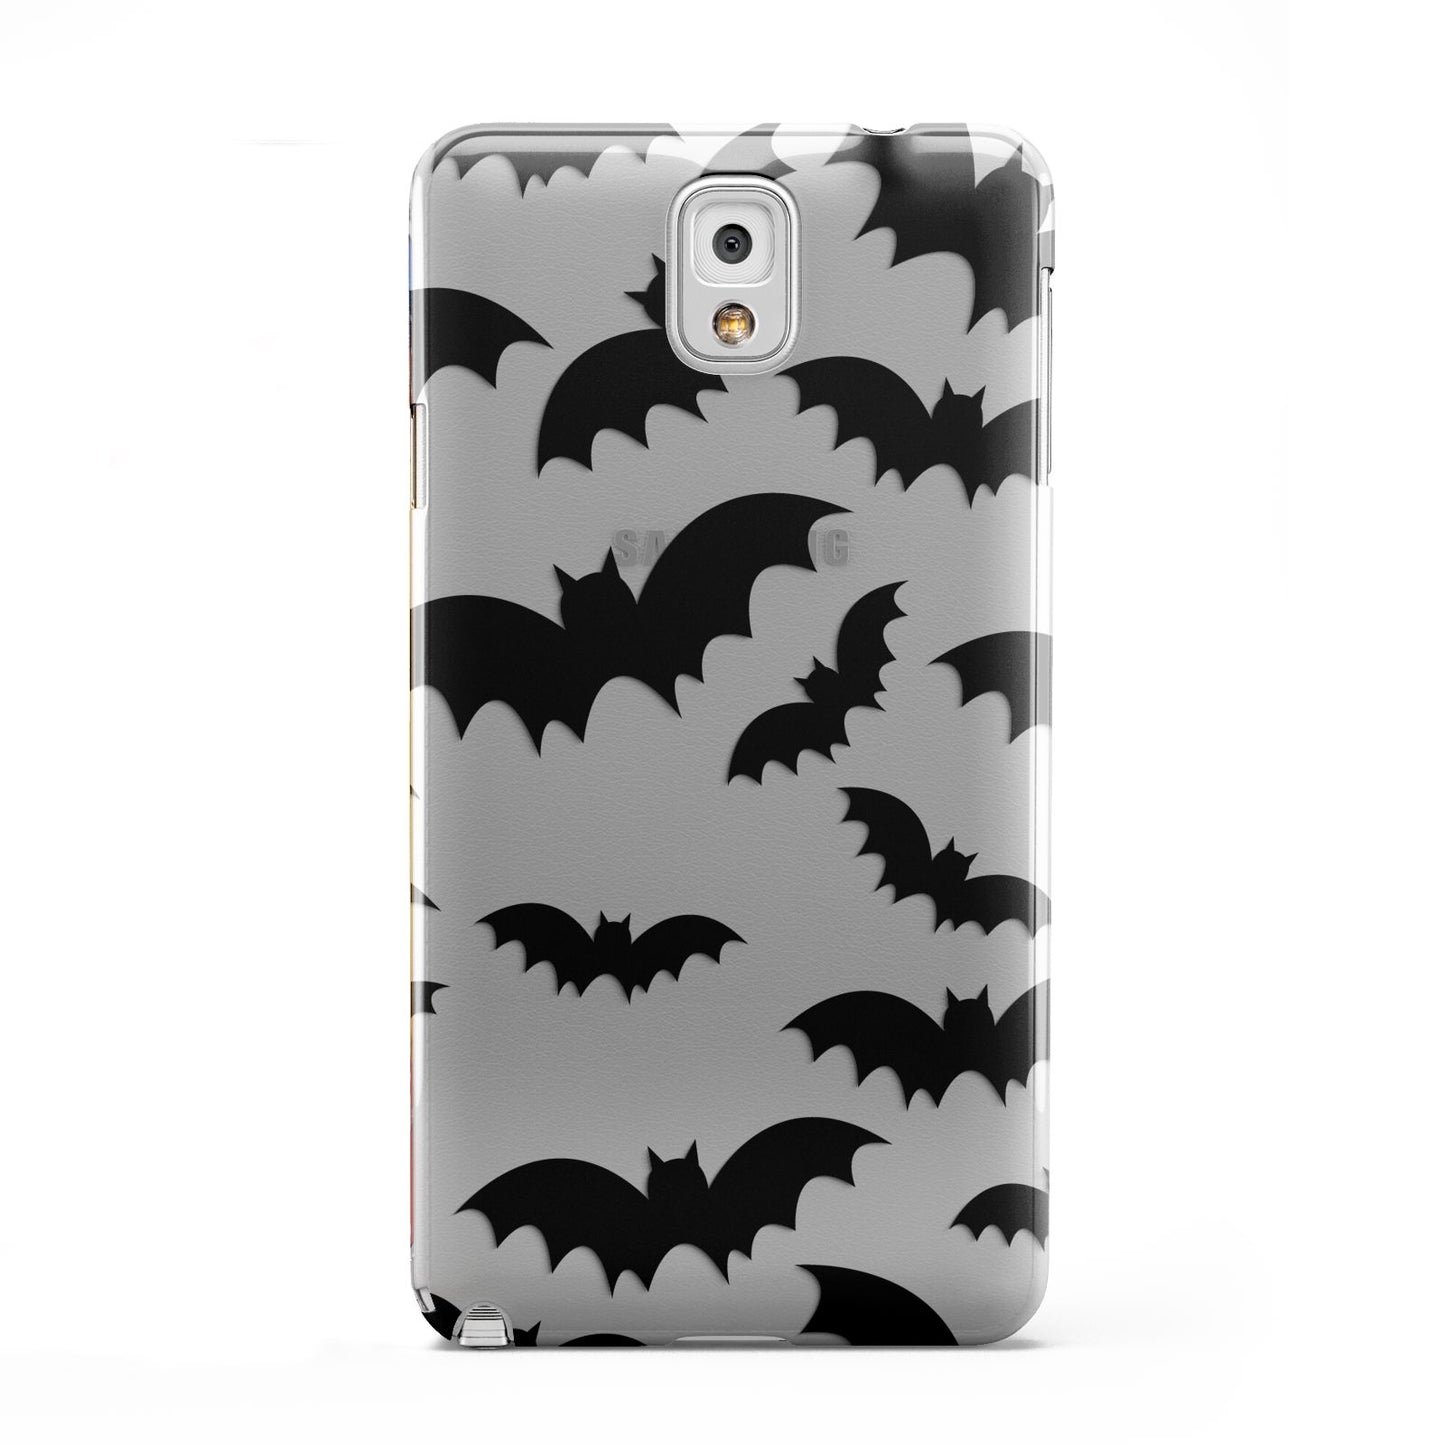 Bat Halloween Print Samsung Galaxy Note 3 Case